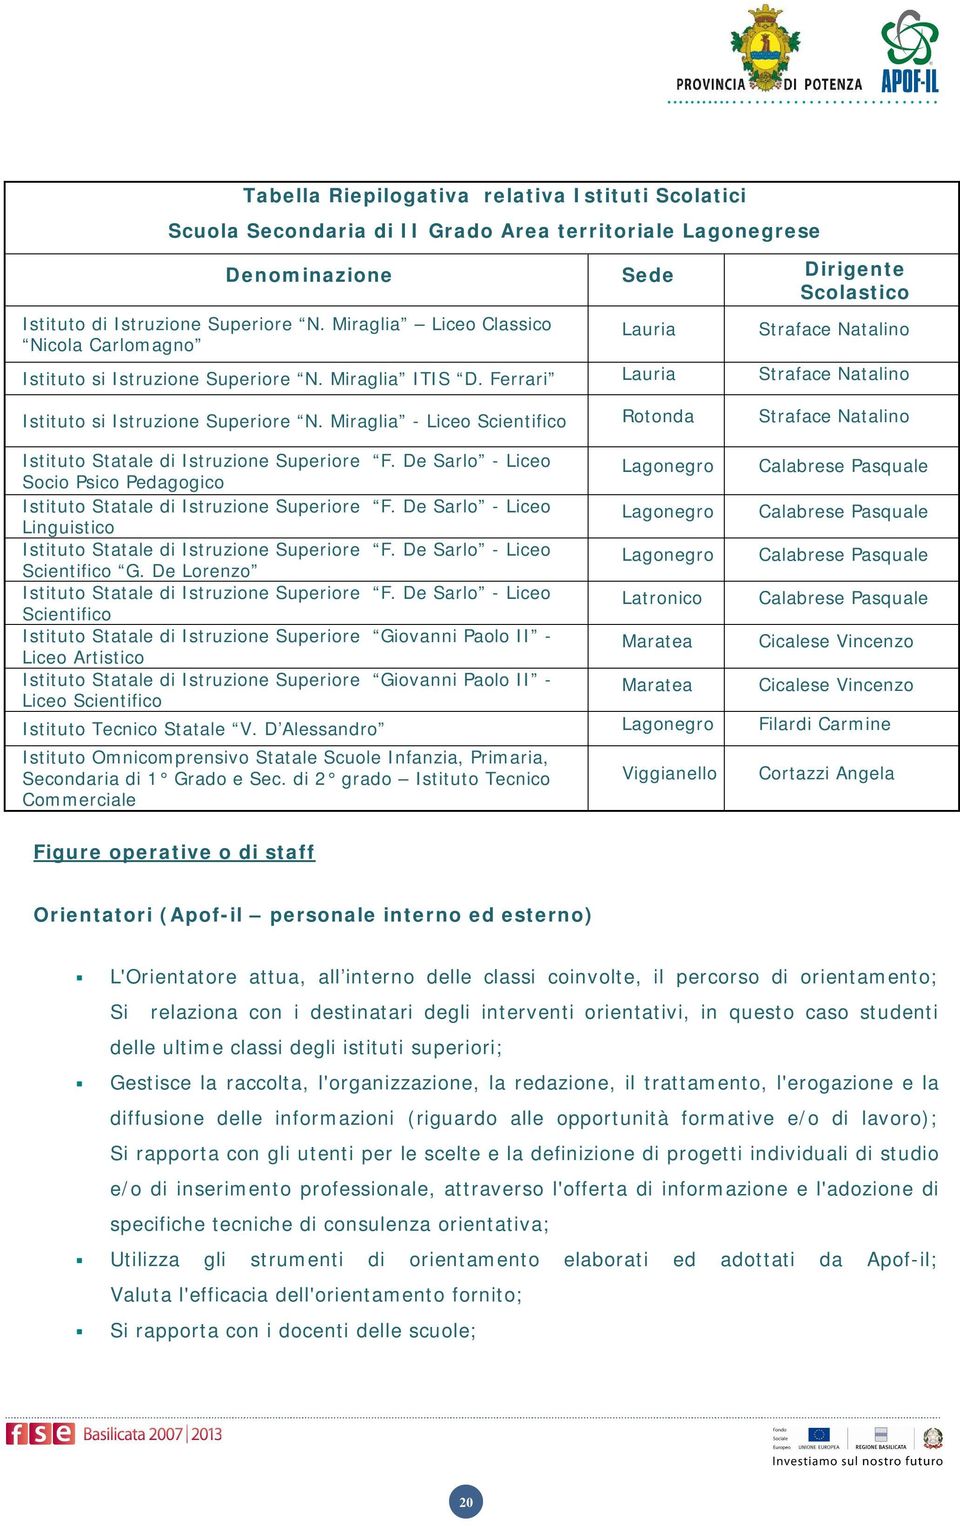 Miraglia - Liceo Scientifico Rotonda Straface Natalino Istituto Statale di Istruzione Superiore F.